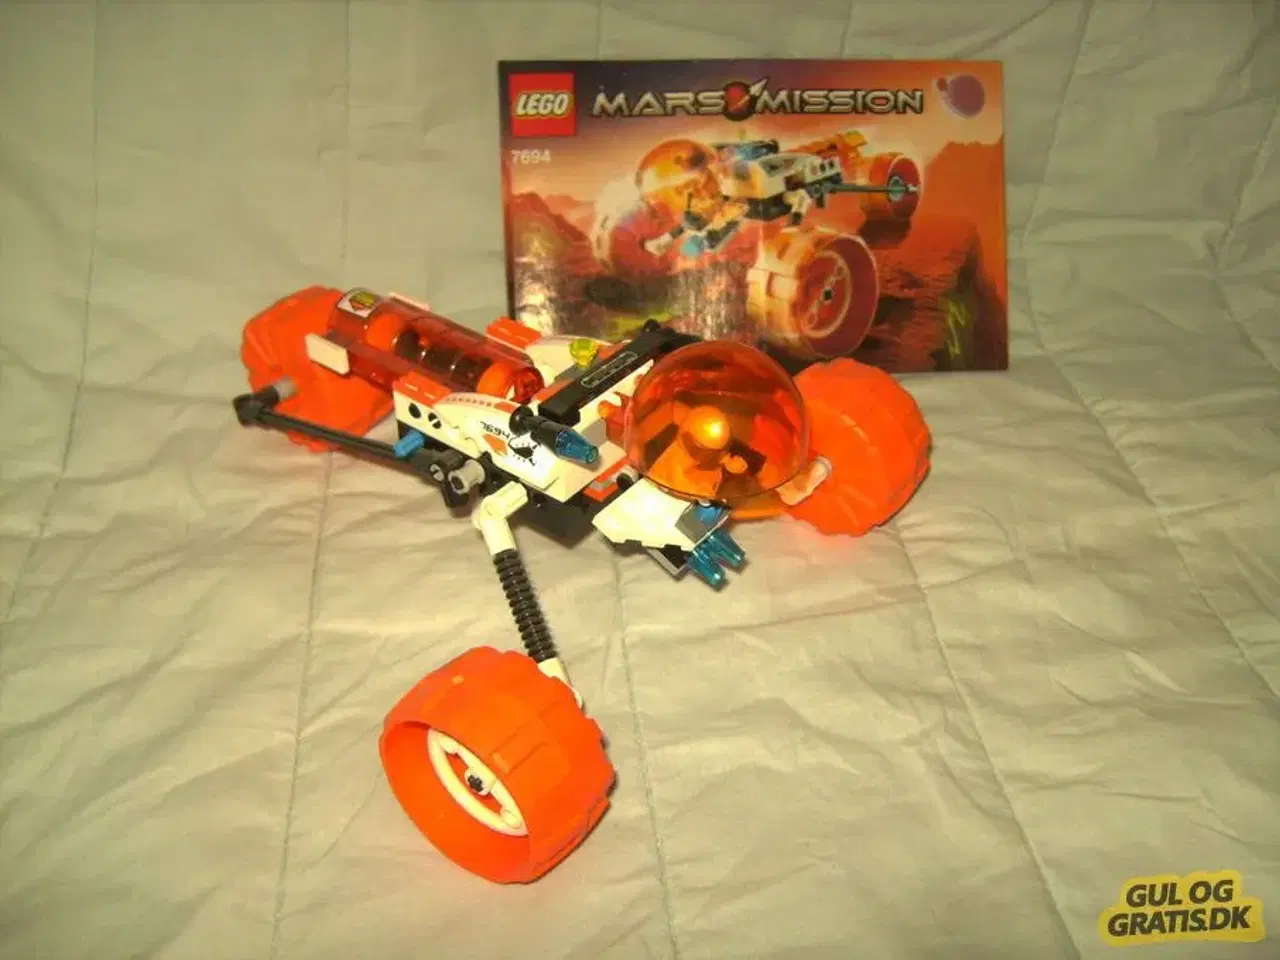 Billede 1 - Lego MARS MISSION: 7694, MT-31 Trike